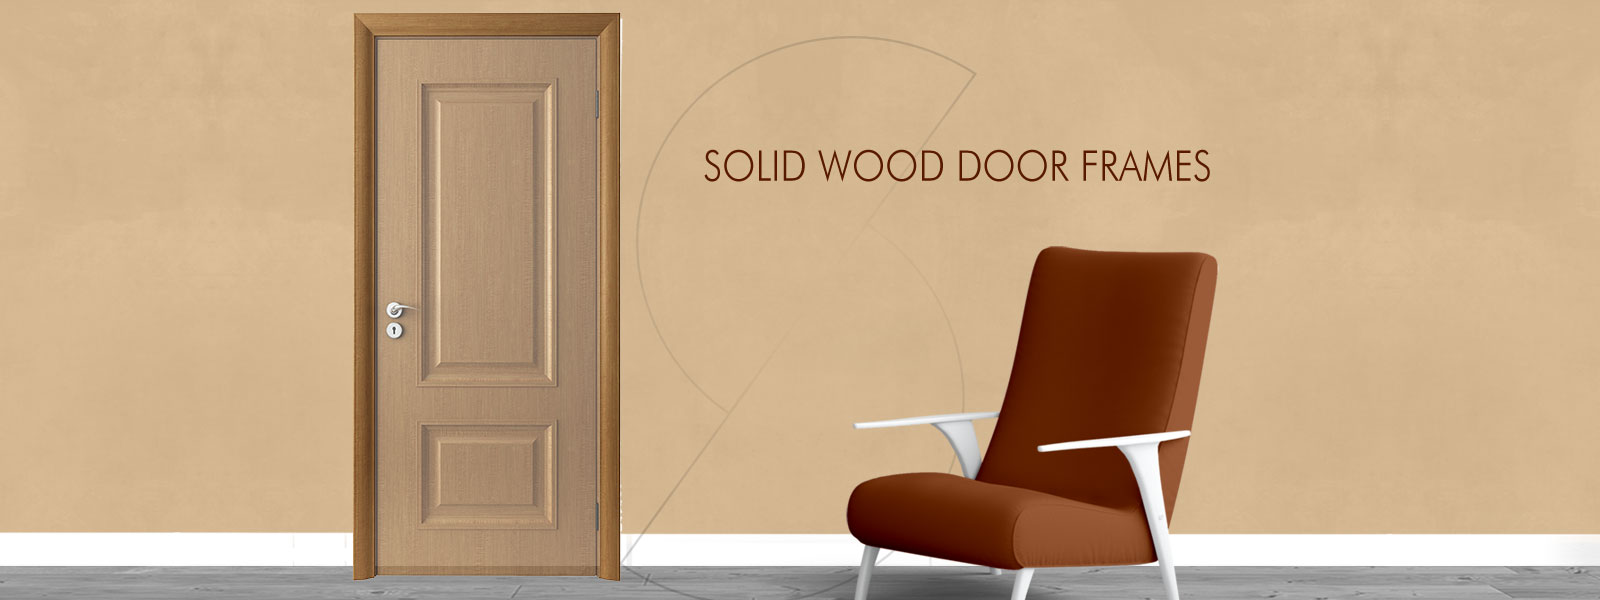 solid wood door frames banner pur